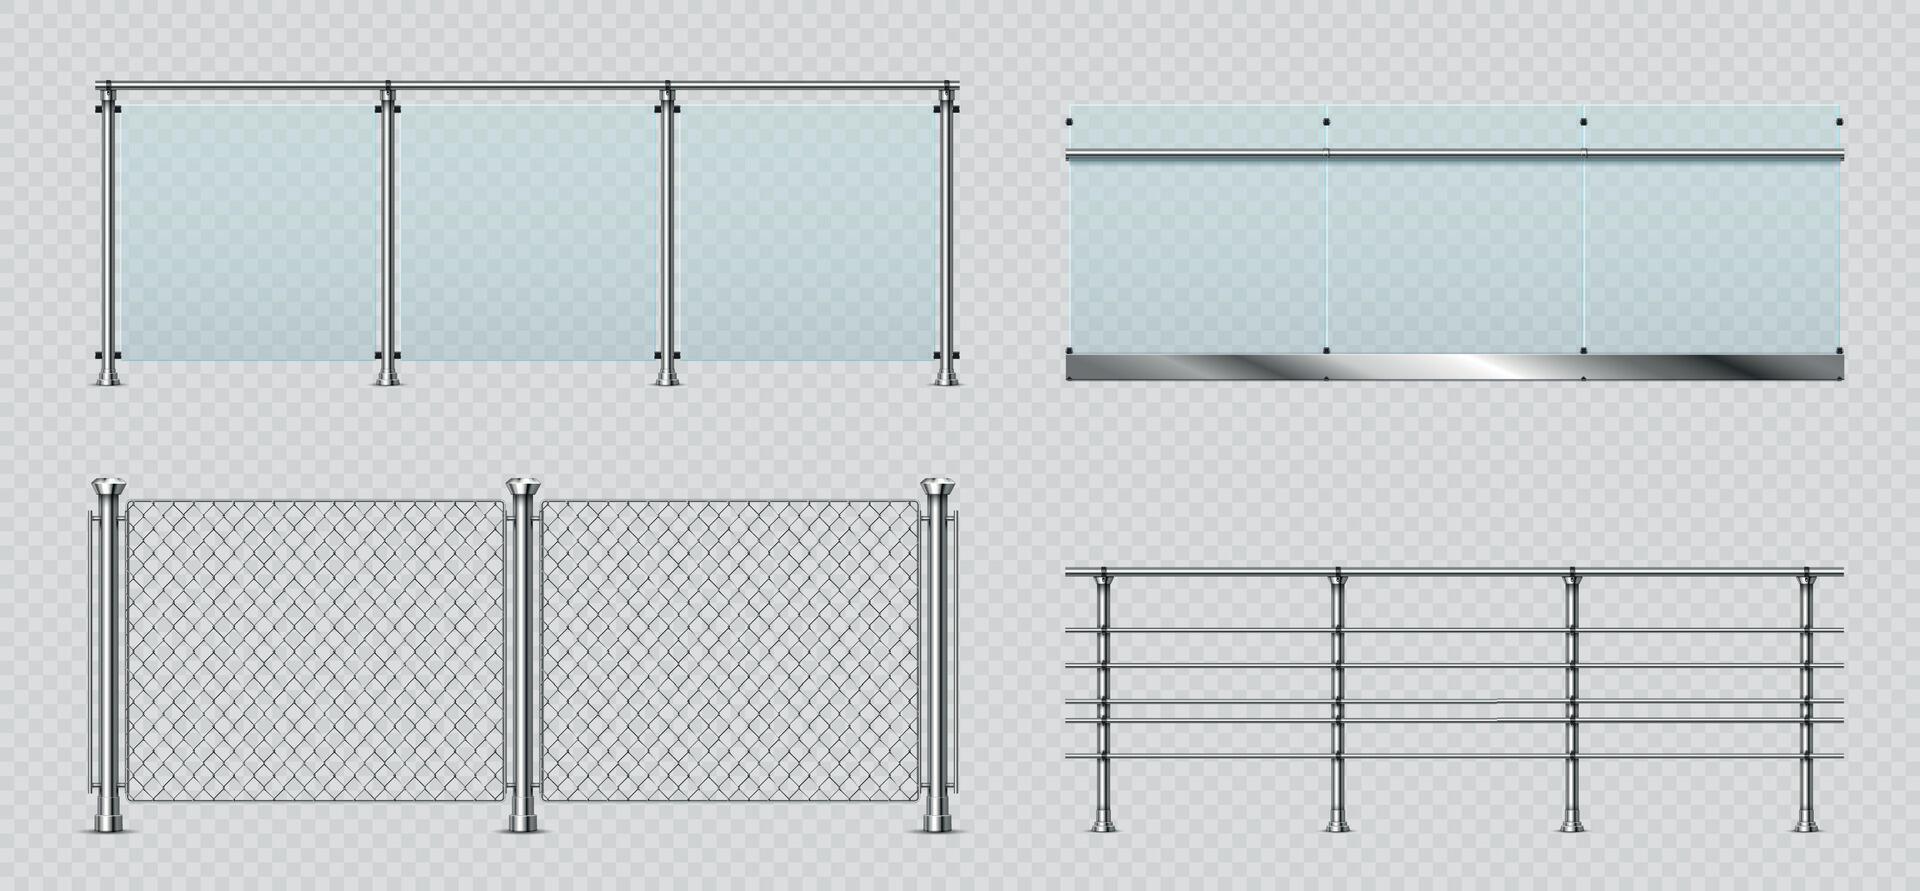 réaliste verre et métal balcon garde-corps, câble clôture. transparent terrasse balustrade avec acier balustrade. bassin escrime sections vecteur ensemble